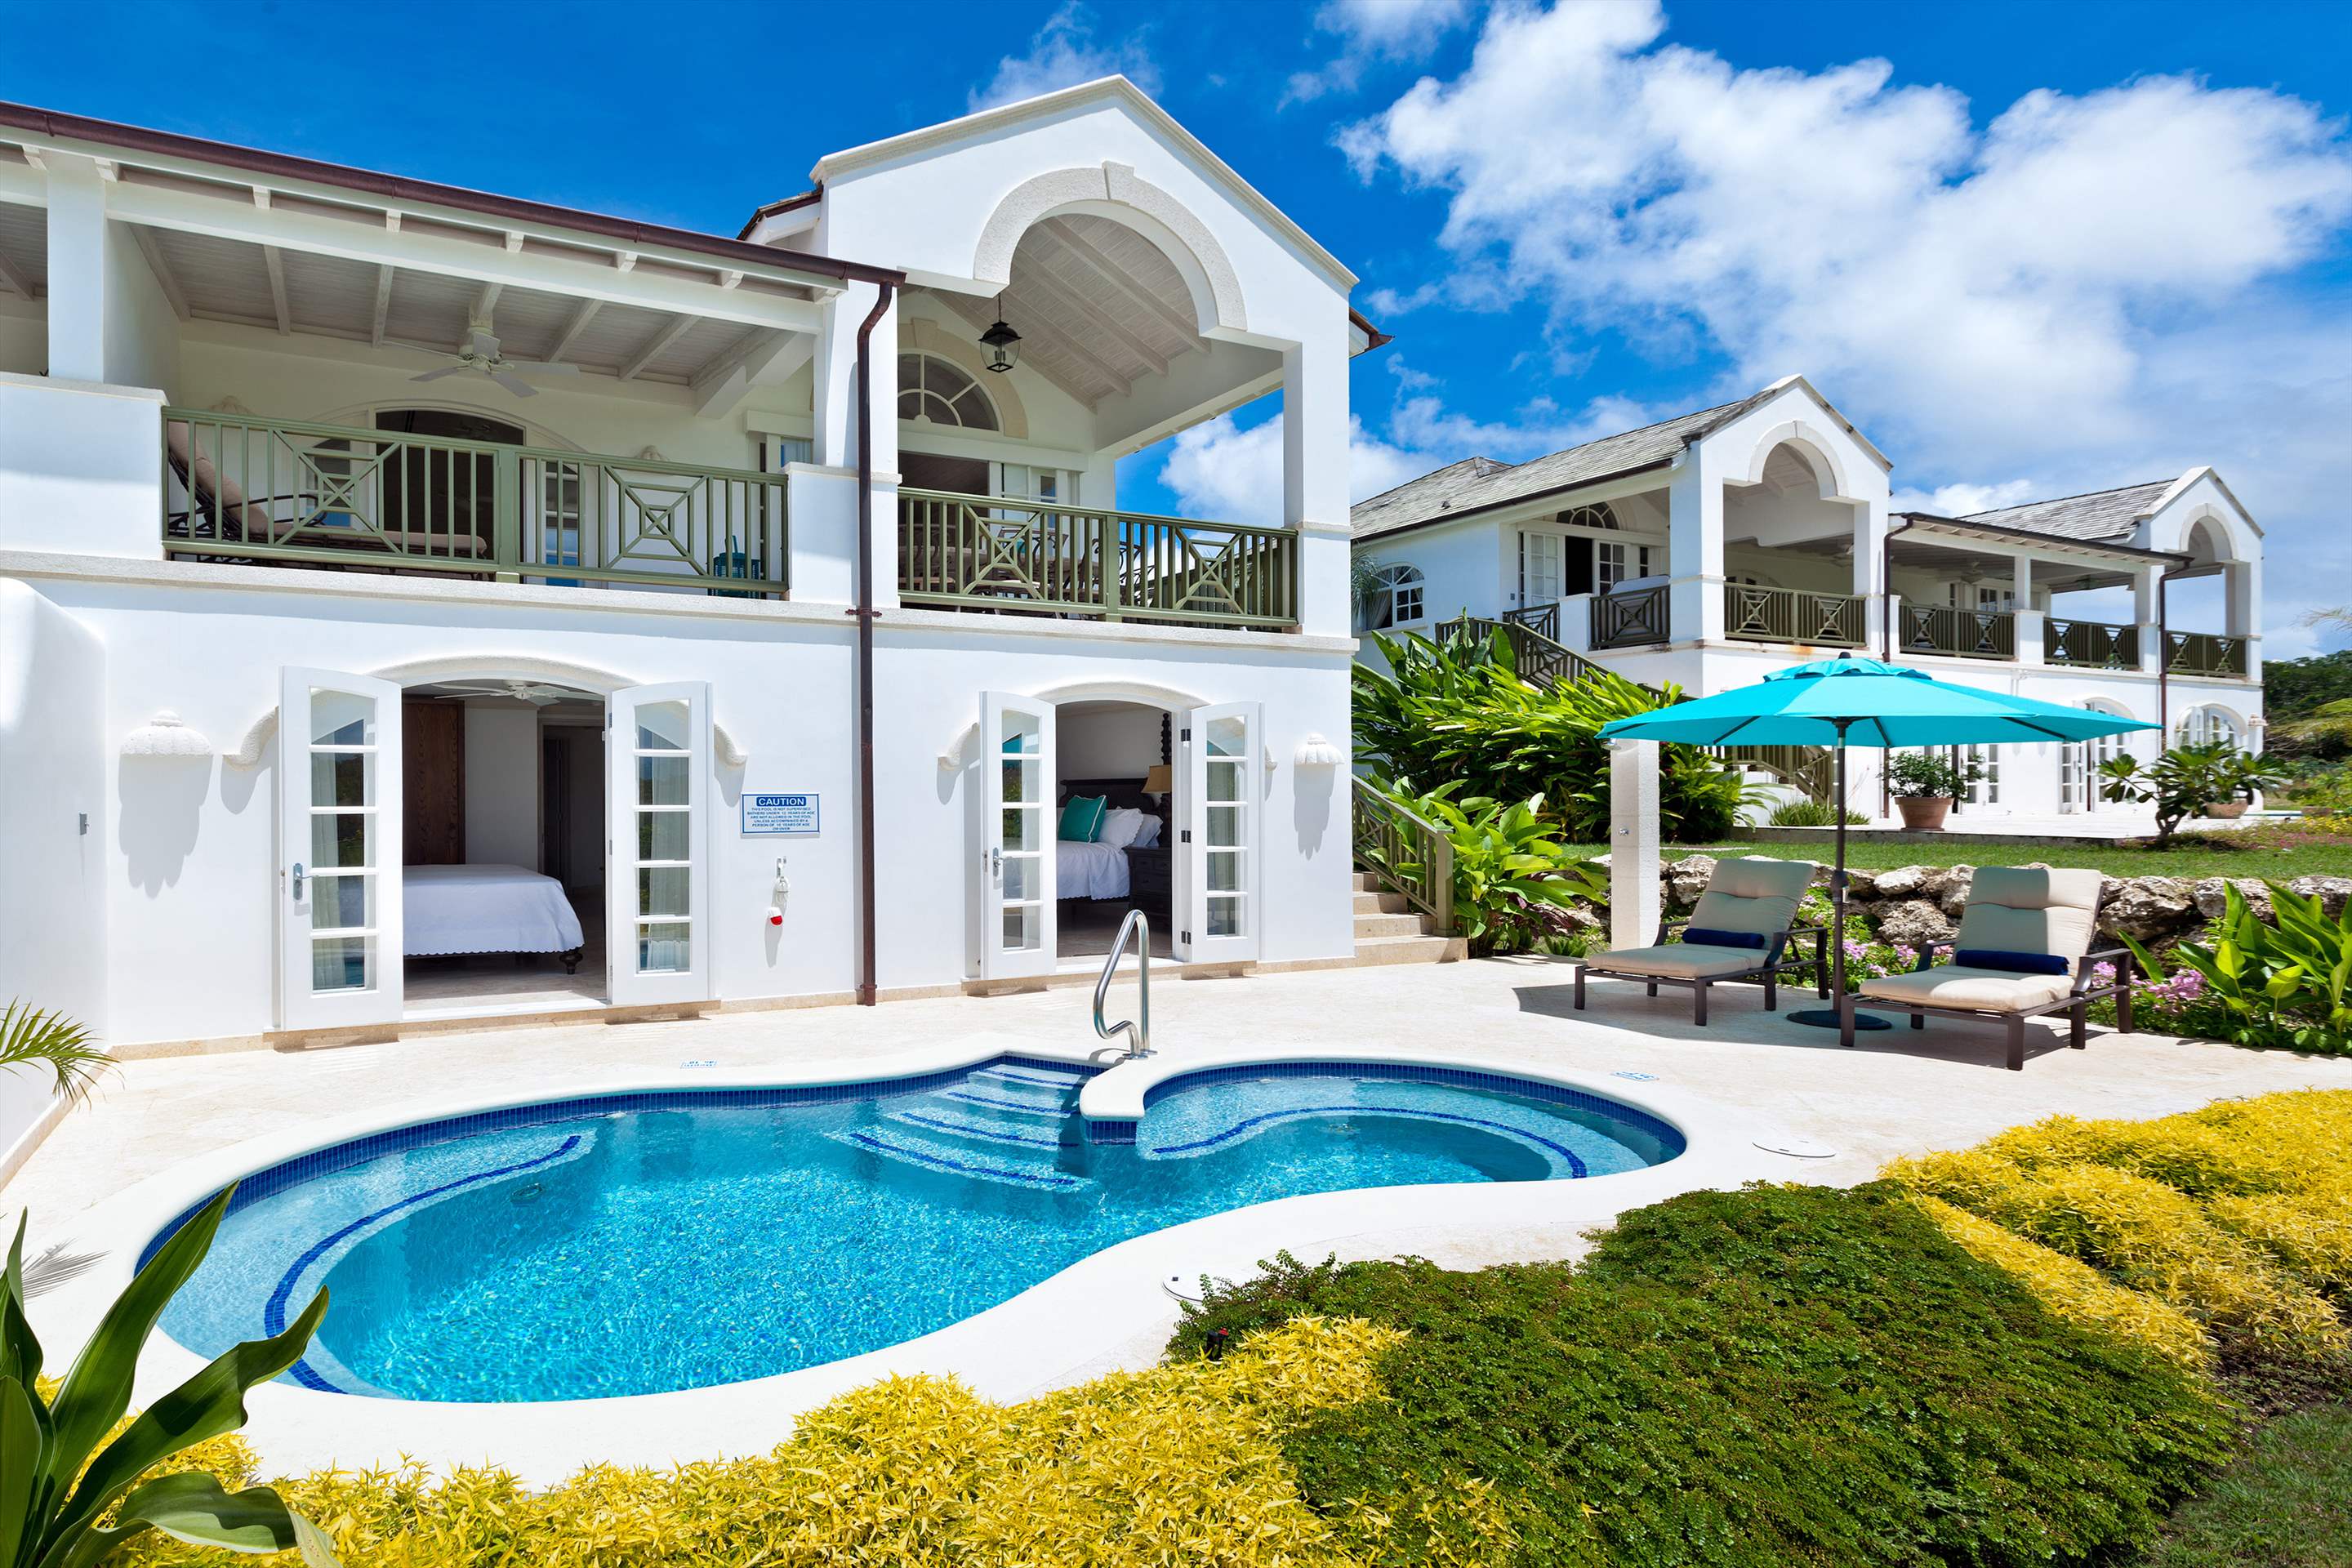 Cherry Red, Royal Westmoreland, 4 bedroom, 4 bedroom villa in St. James & West Coast, Barbados